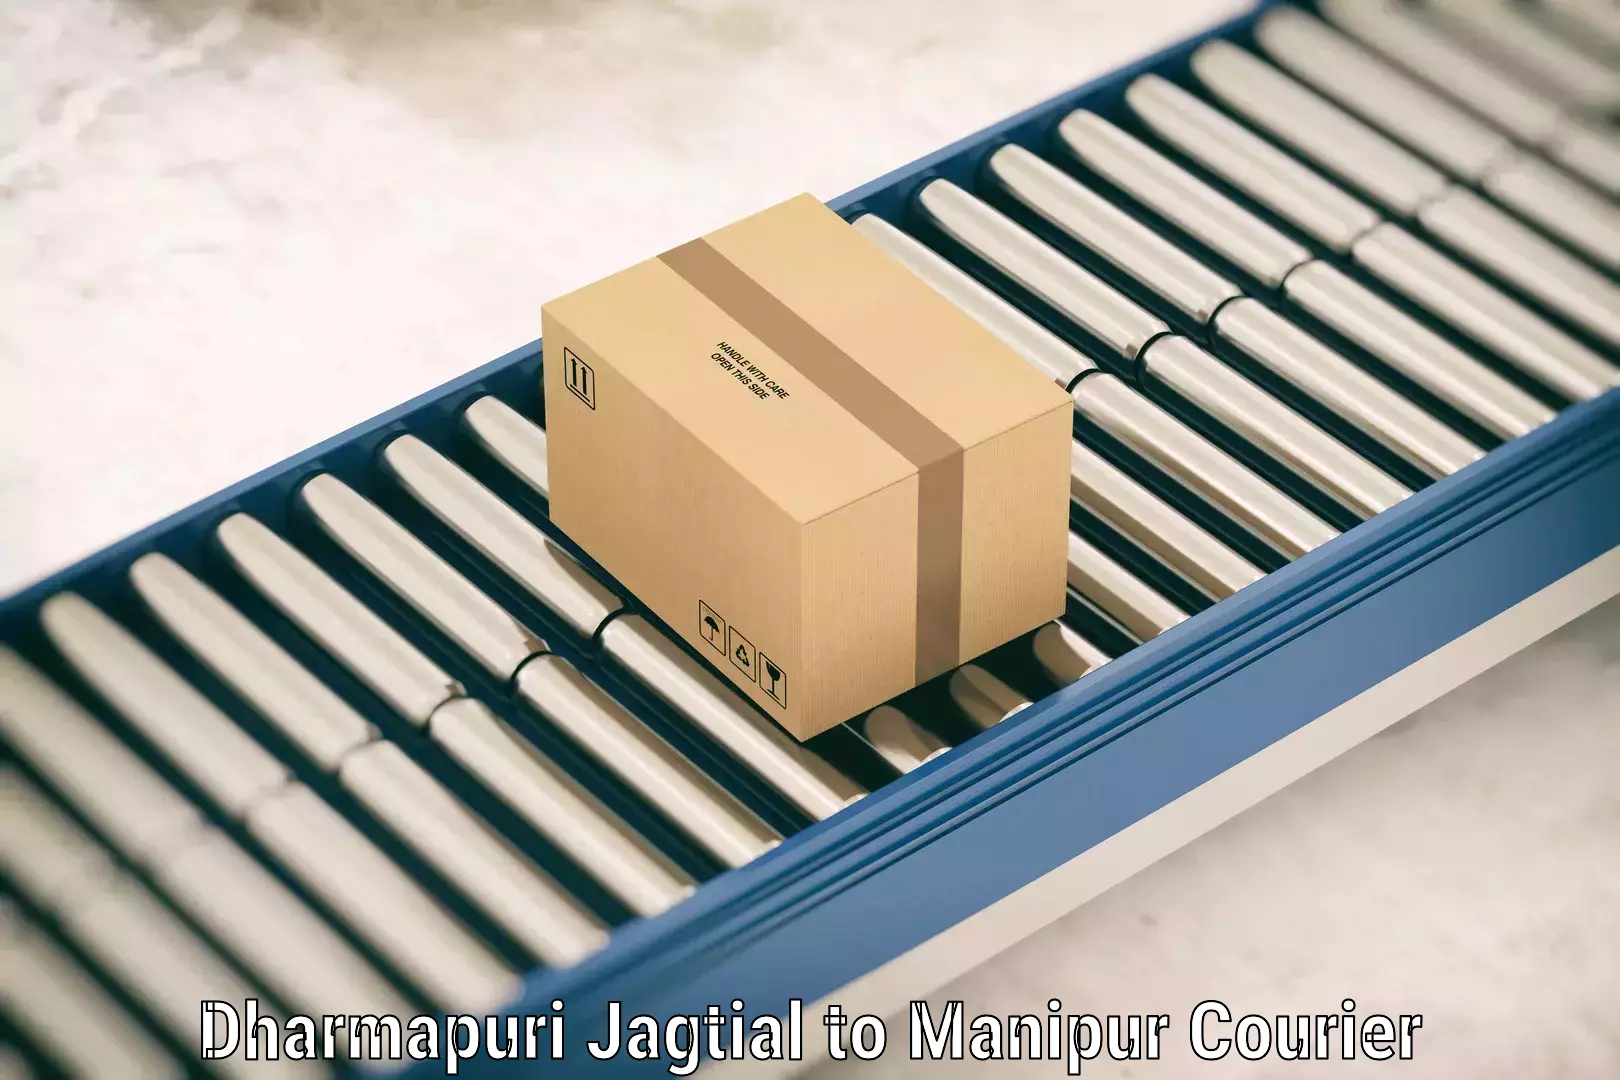 Personal luggage delivery Dharmapuri Jagtial to Manipur